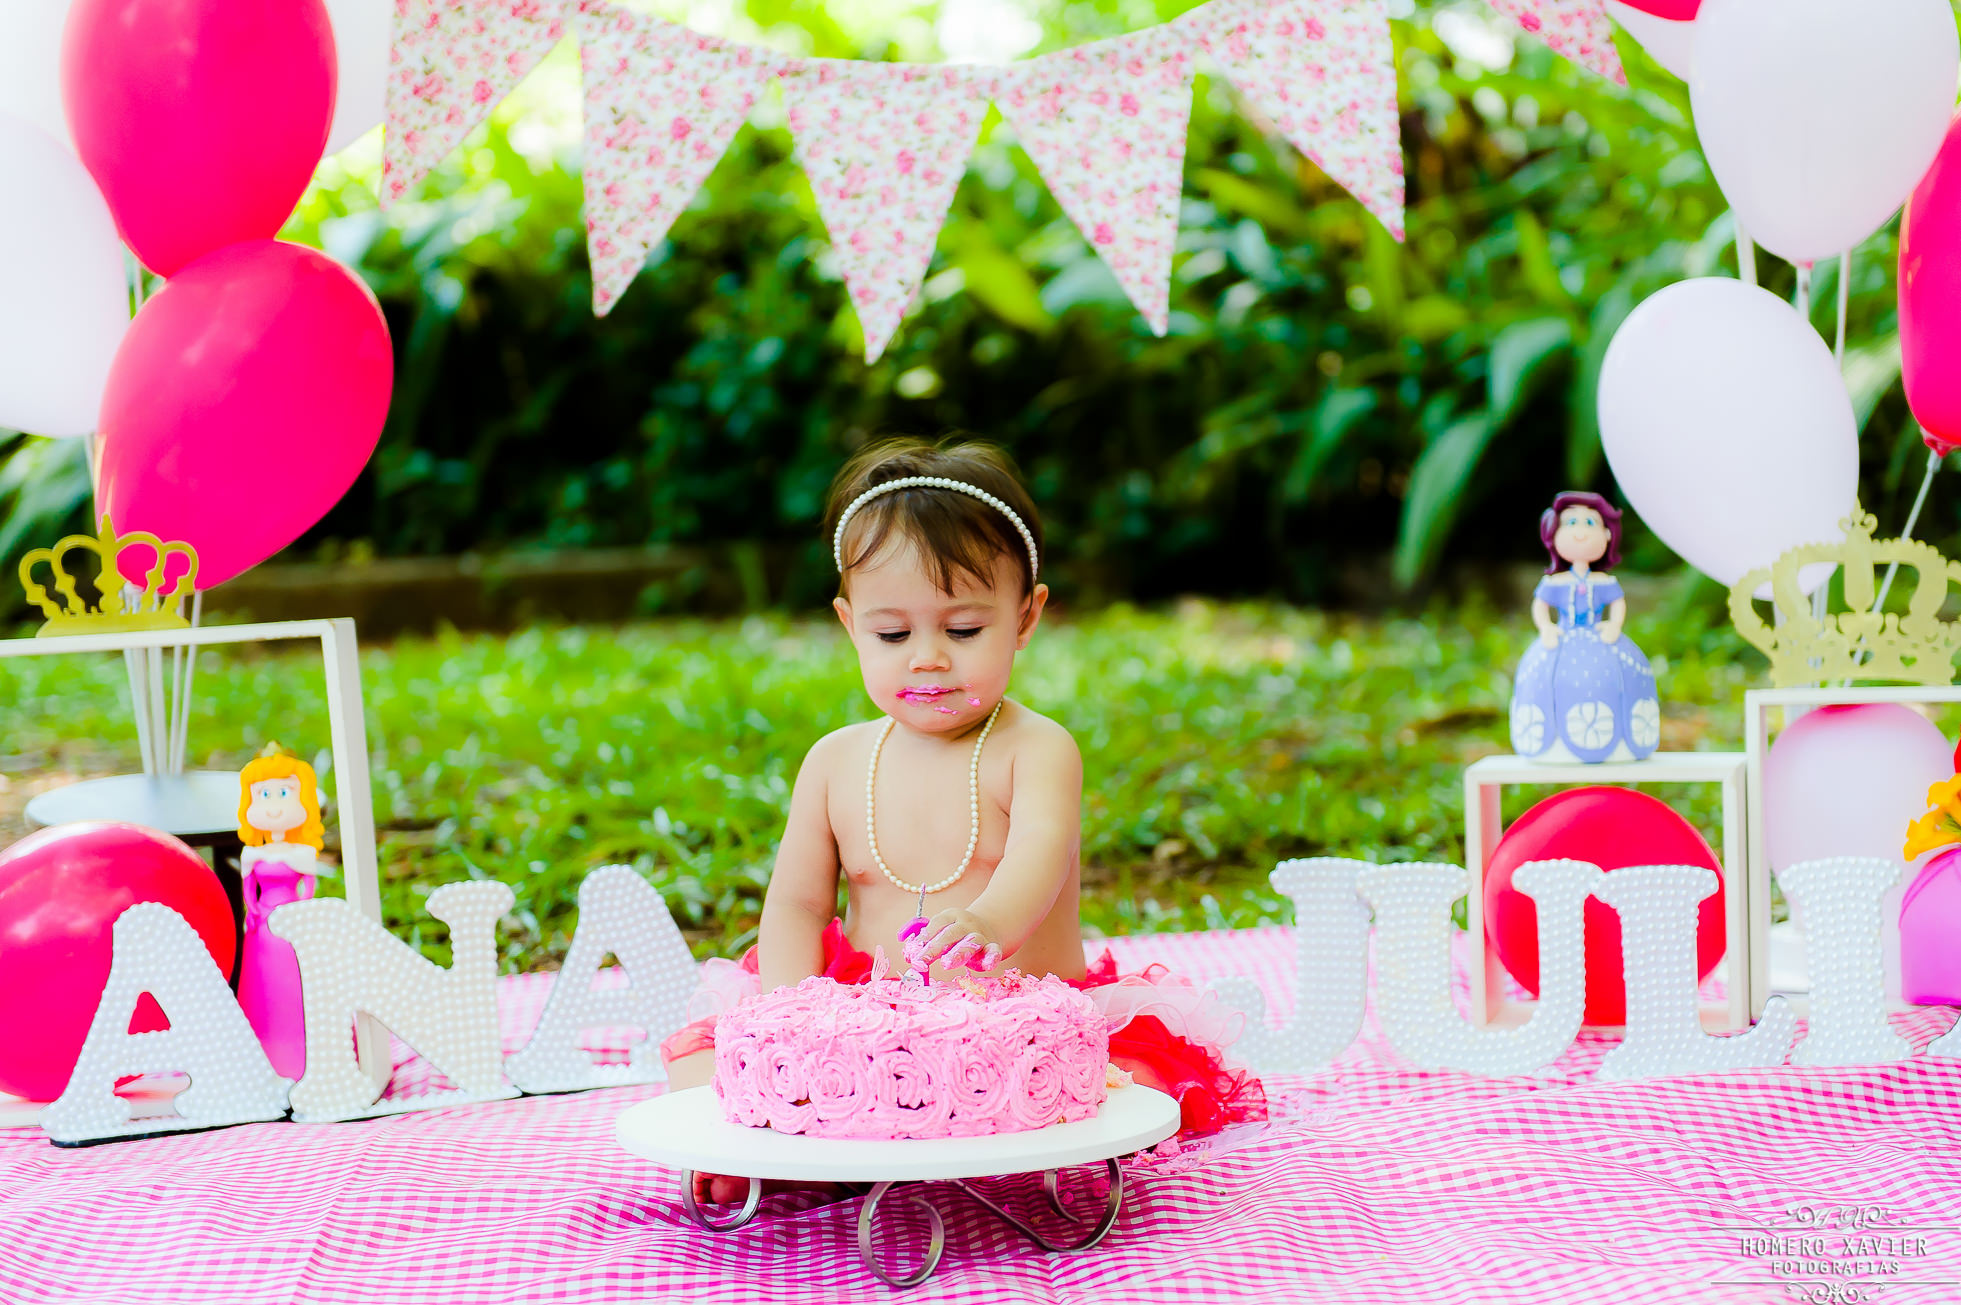 fotografia infantil smash the cake em BH bebe fez 1 aninho e esmagou o bolo para as fotos pré festa de aniversário.